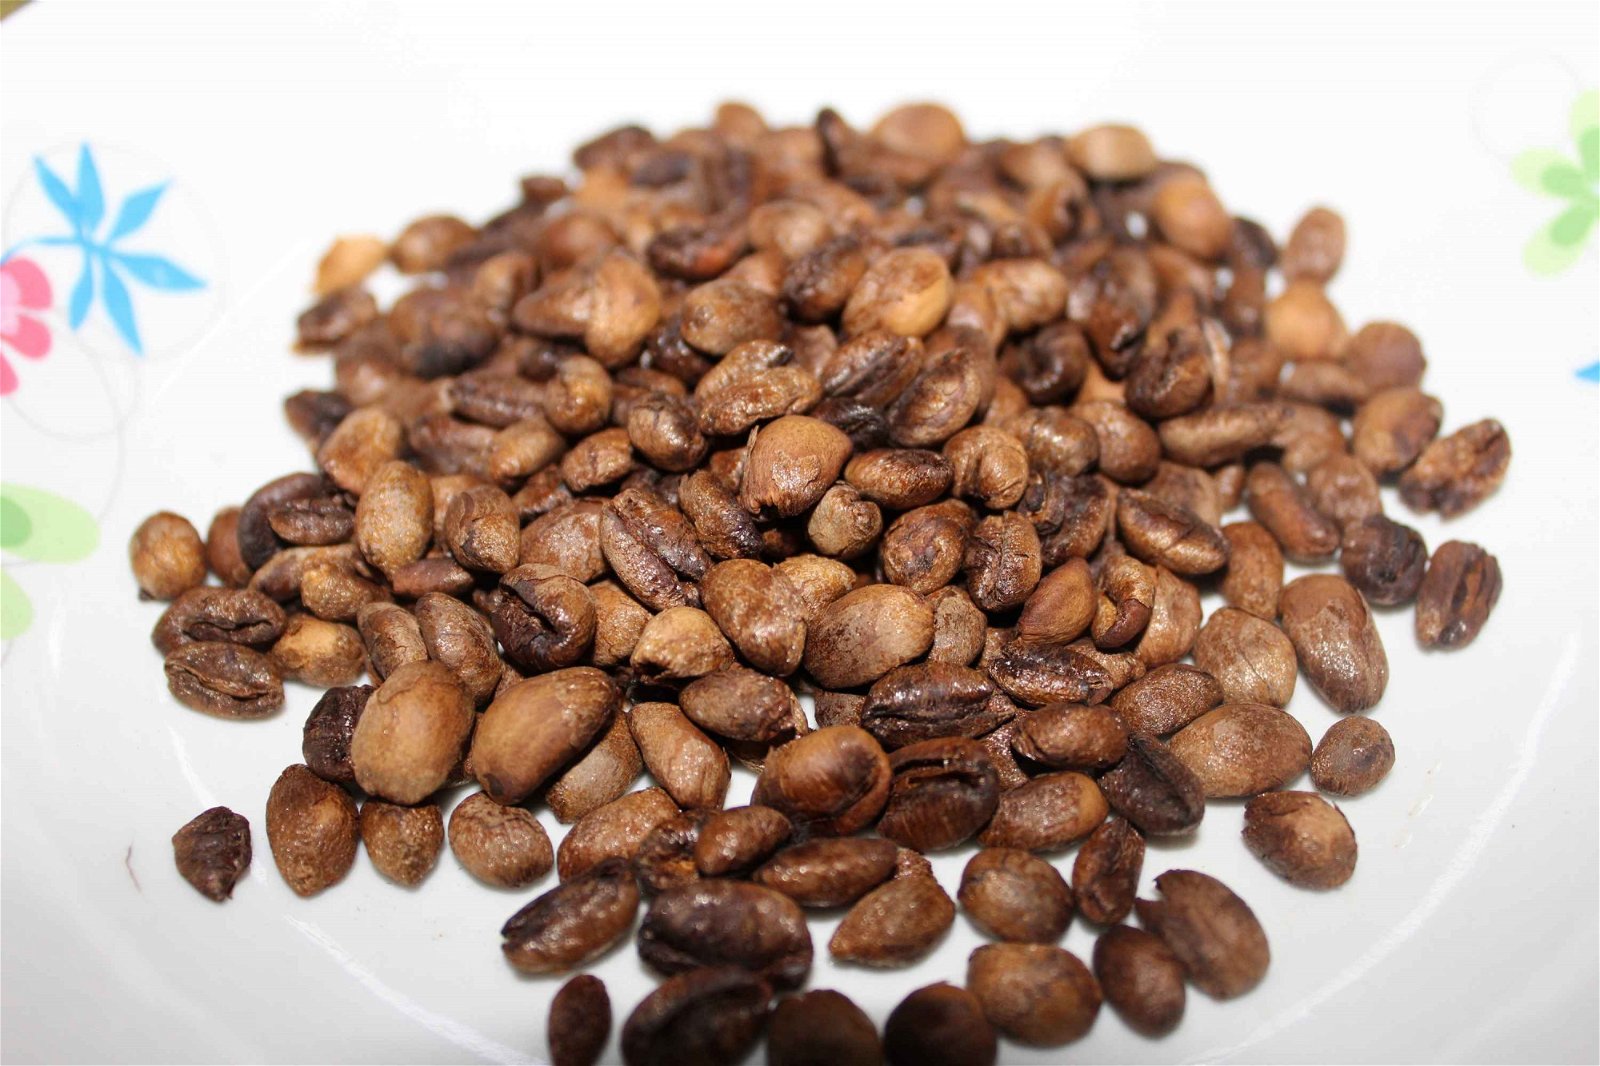 经过加工，即炒干或烘培后的咖啡豆，香味浓郁，保存期可达6个月，但若要品尝最佳的风味，还是越快尝用越好。